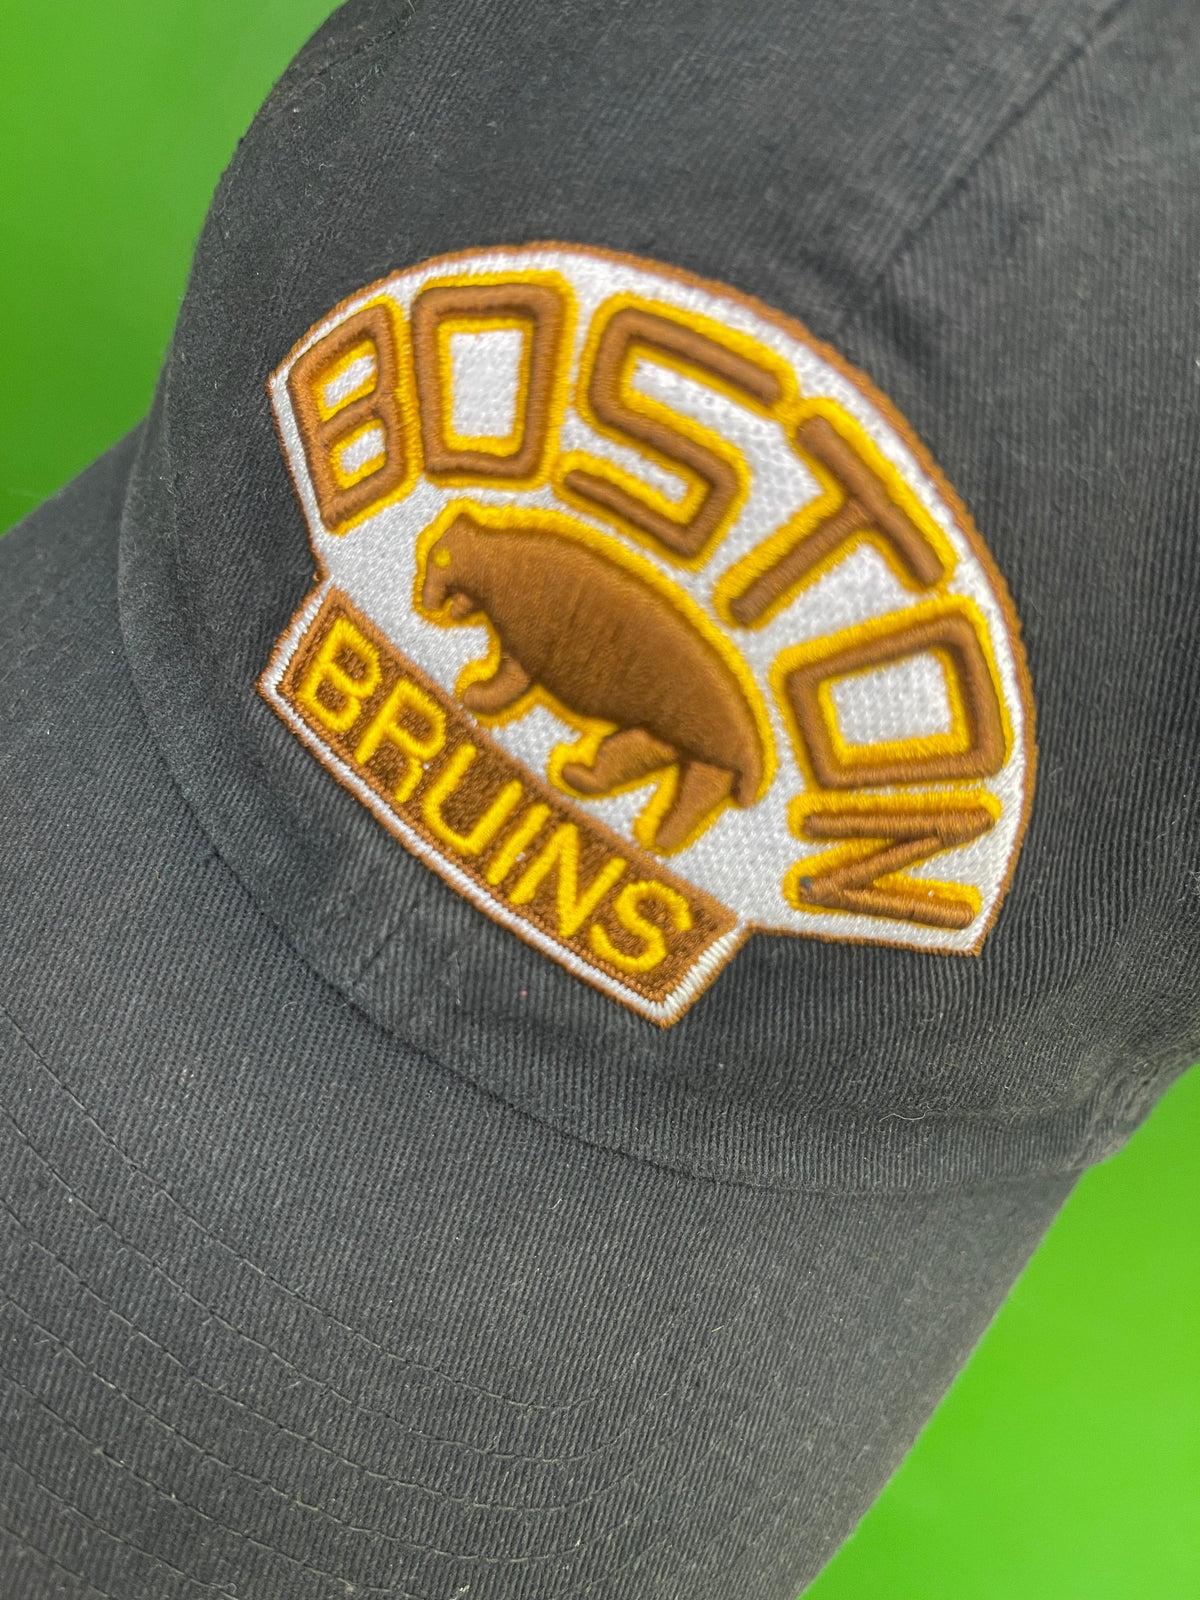 NHL Boston Bruins OTS Vintage Hockey 100% Cotton Hat/Cap OSFM